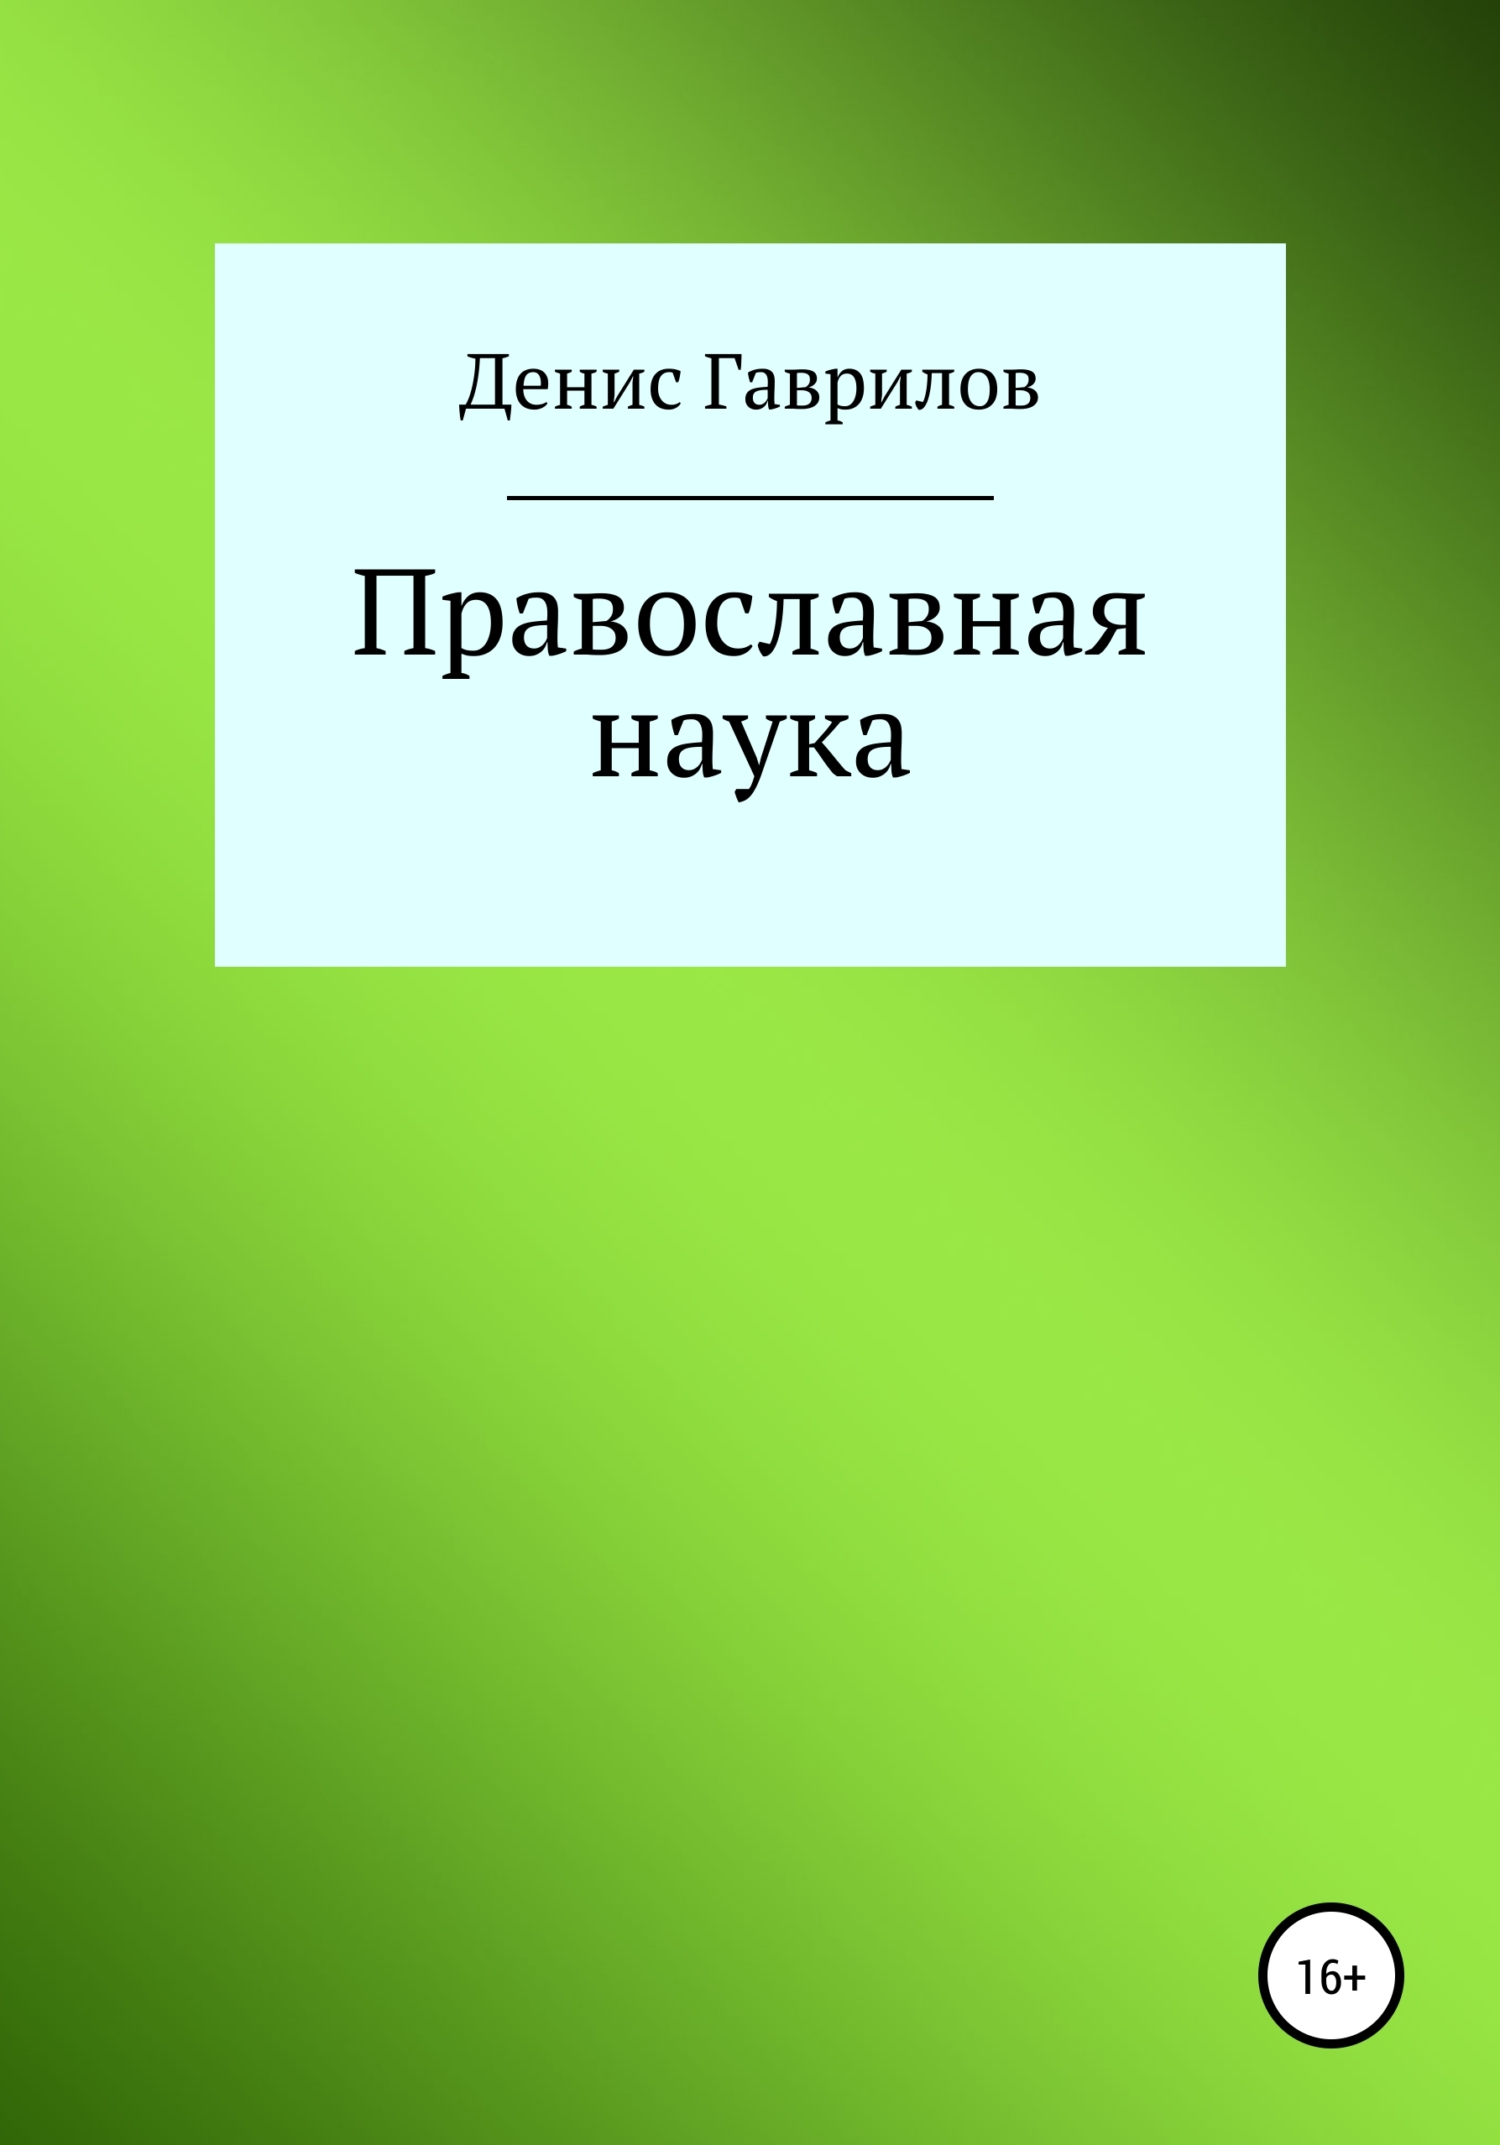 Православная философия и наука - Денис Роиннович Гаврилов